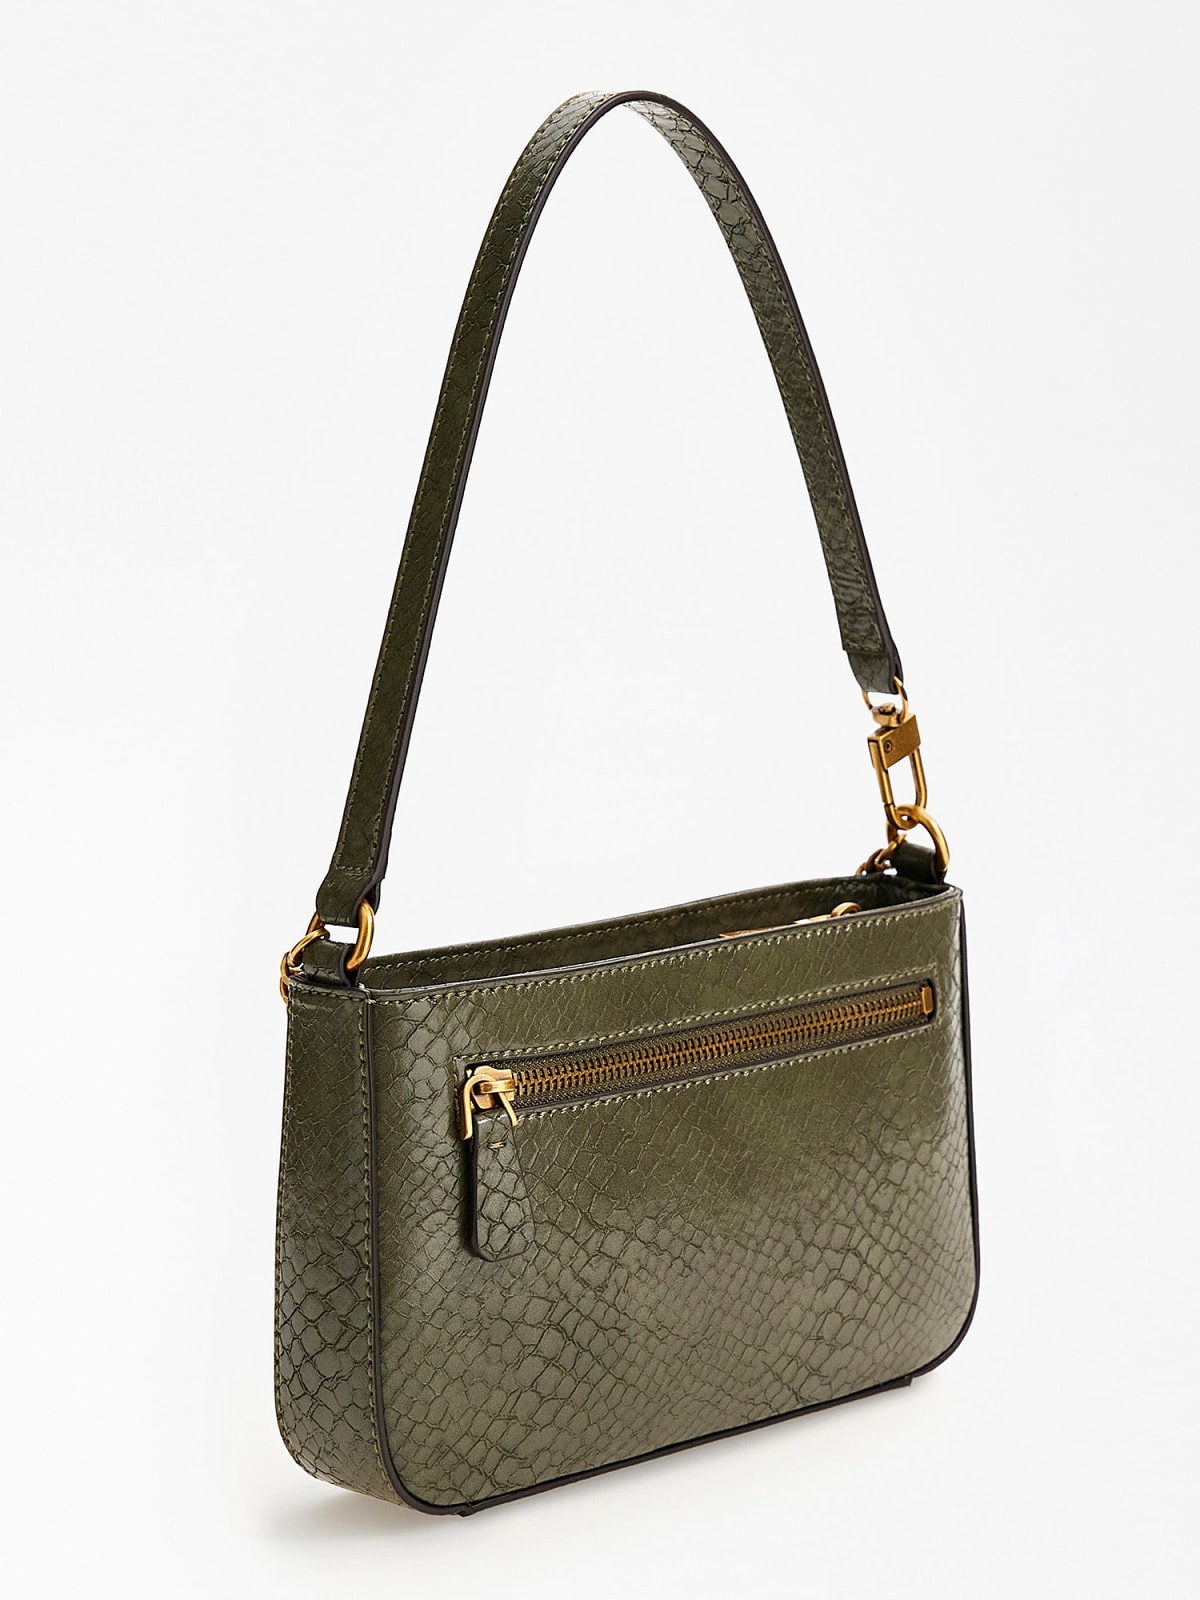 Python effect shoulder bag in mini size, Green, large image number 1